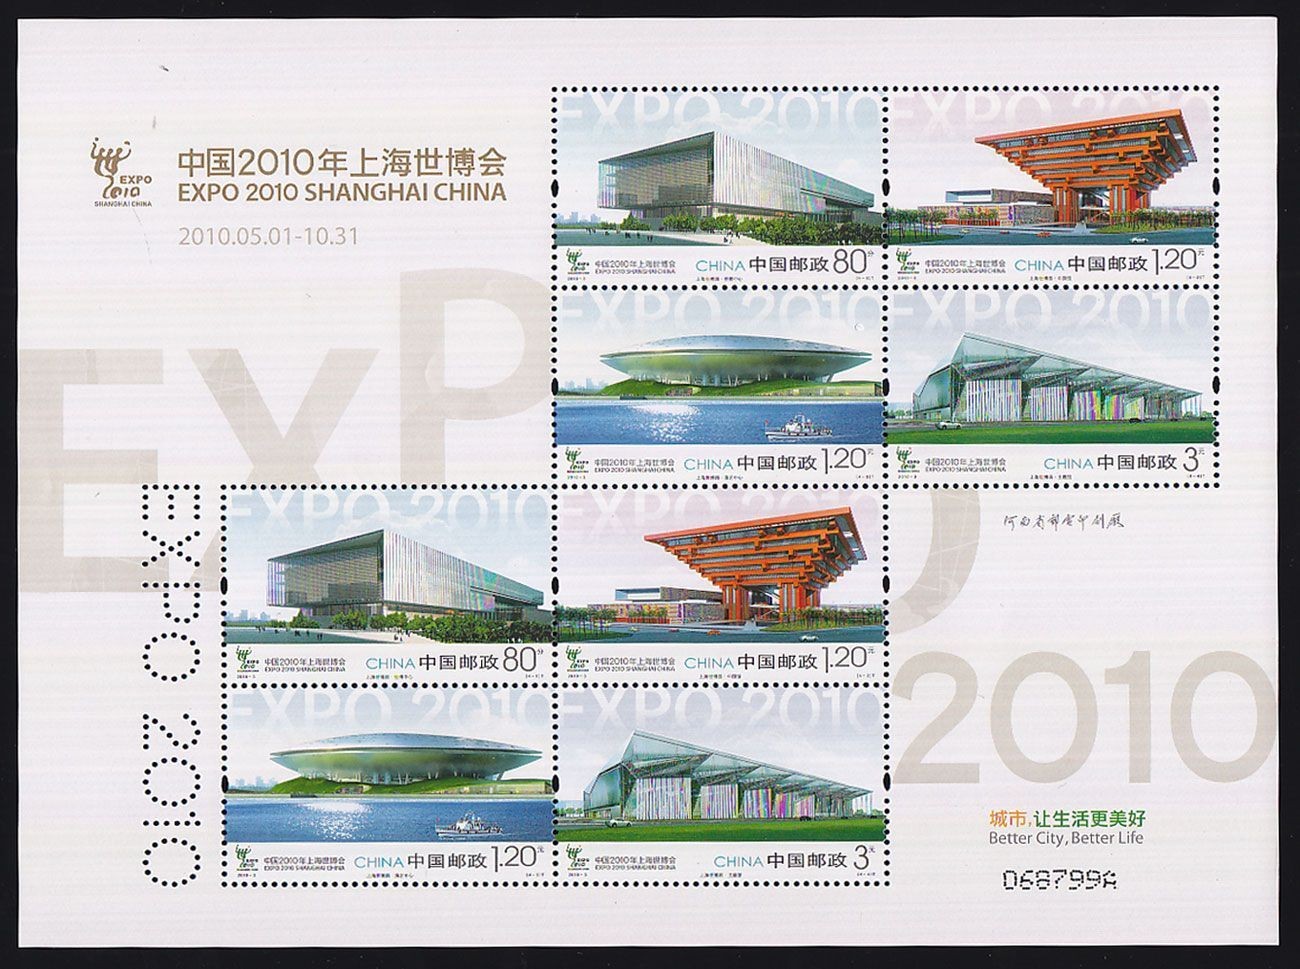 上海世博会系列邮票欣赏(图)